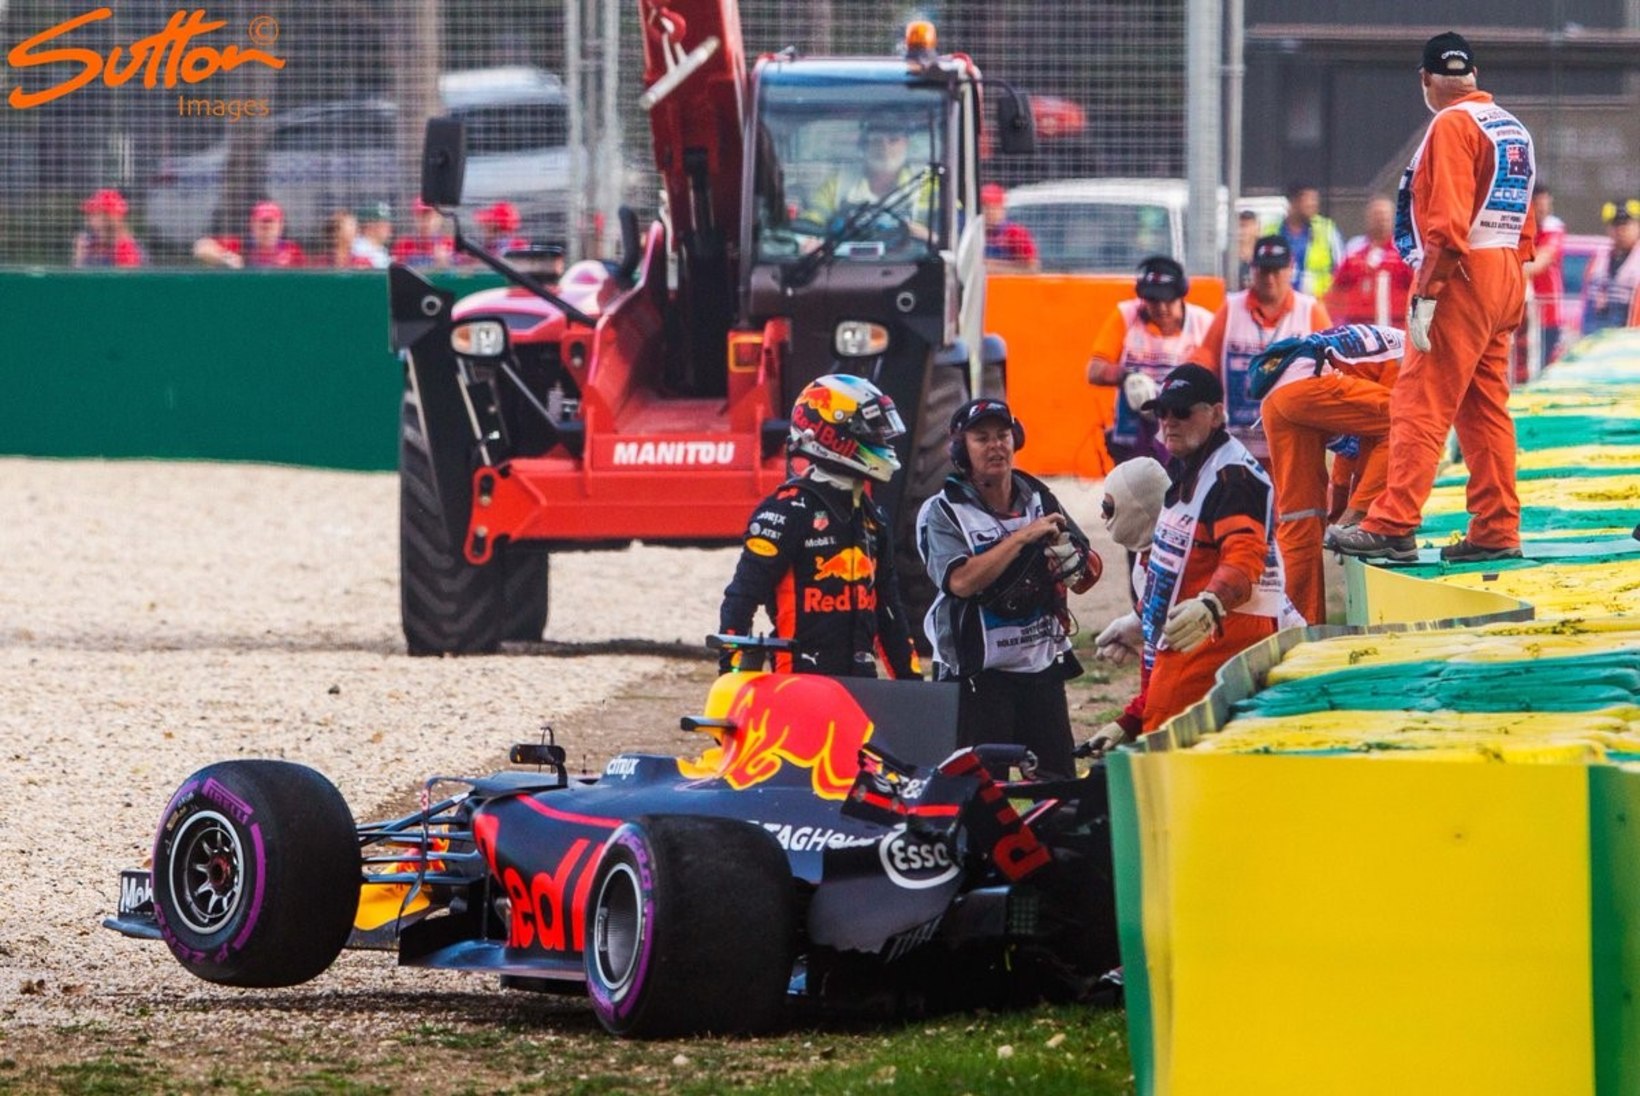 VIDEO | Ricciardo sõitis kvalifikatsioonis kodupubliku ees rajalt välja ja seina